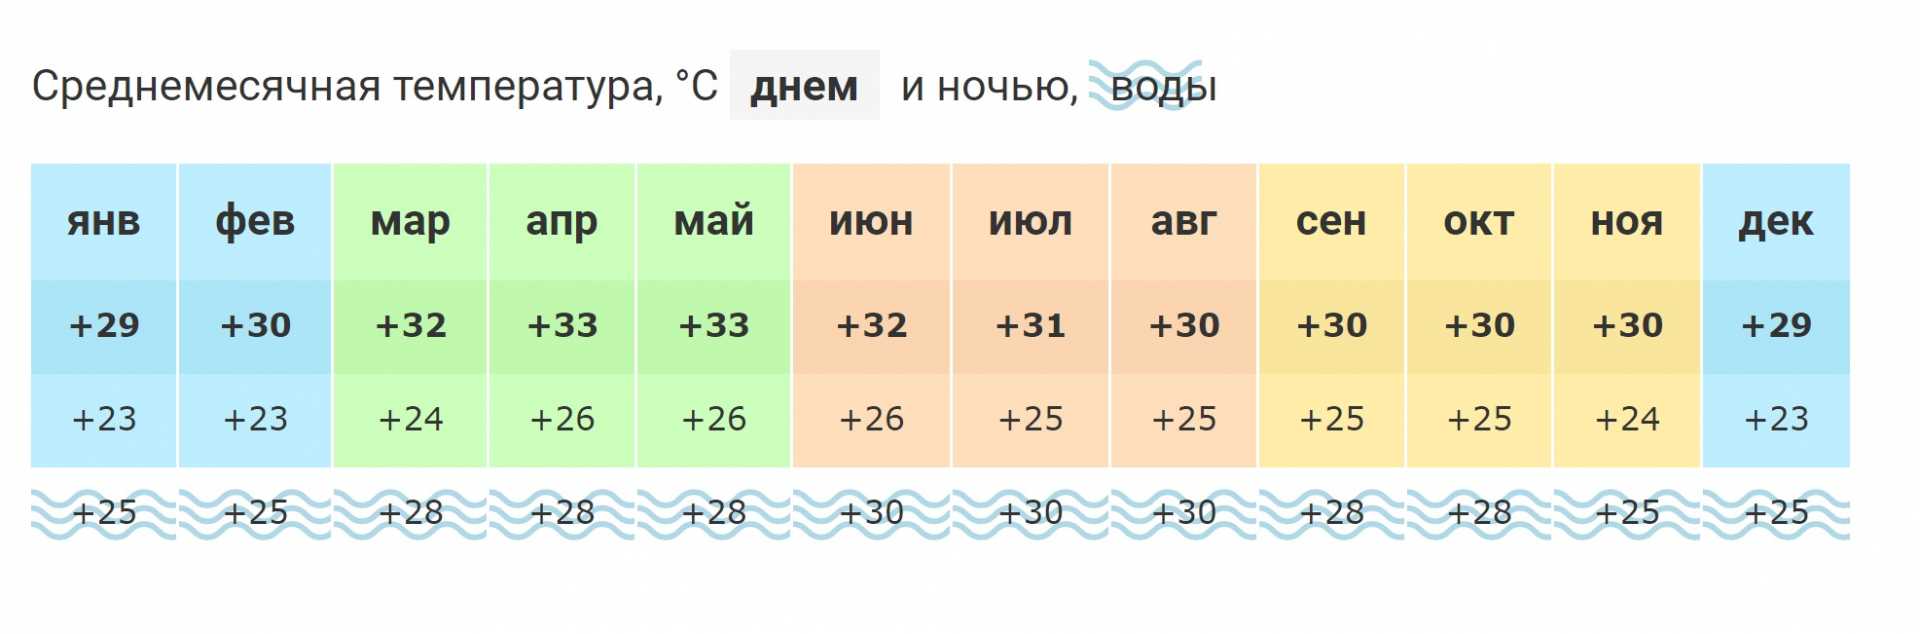 Погода мармарис вода температура воды. Черногория климат по месяцам. Средняя температура в Черногории по месяцам. Температура в Черногории по месяцам и температура воды. Черногория температура по месяцам.